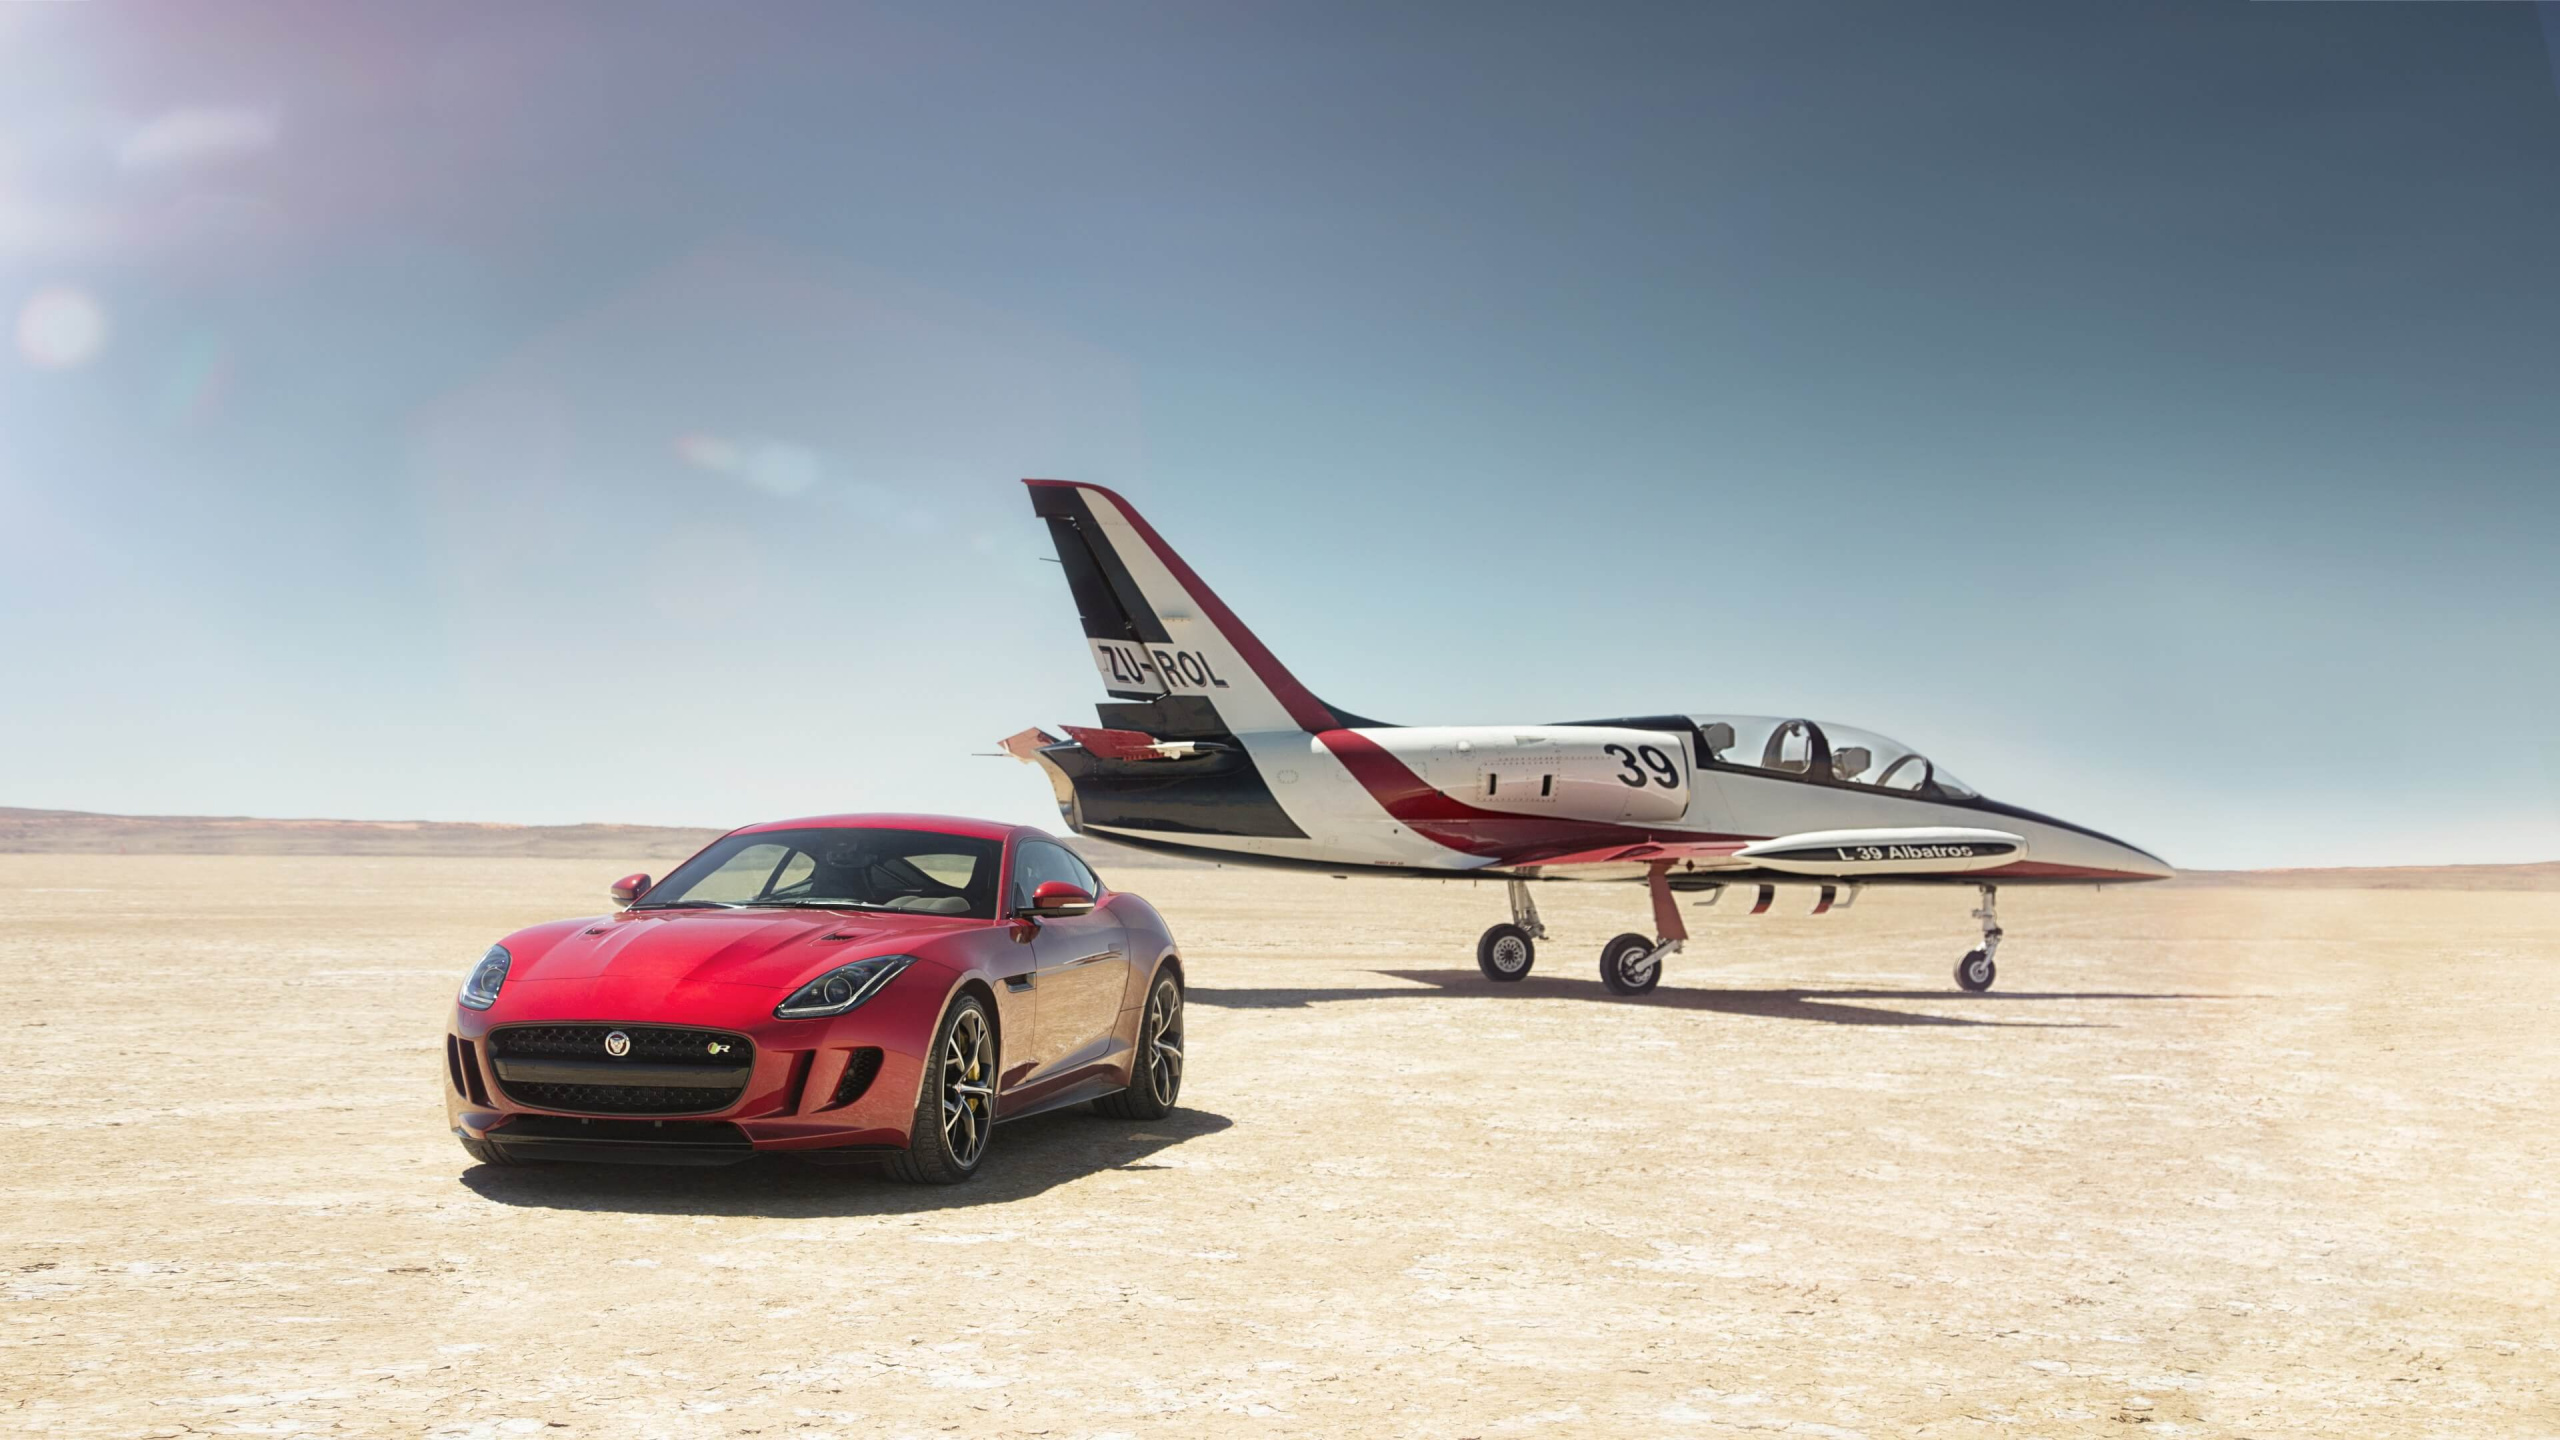 Jaguar Cars, Jaguar, Car, Airplane, Sports Car. Wallpaper in 2560x1440 Resolution